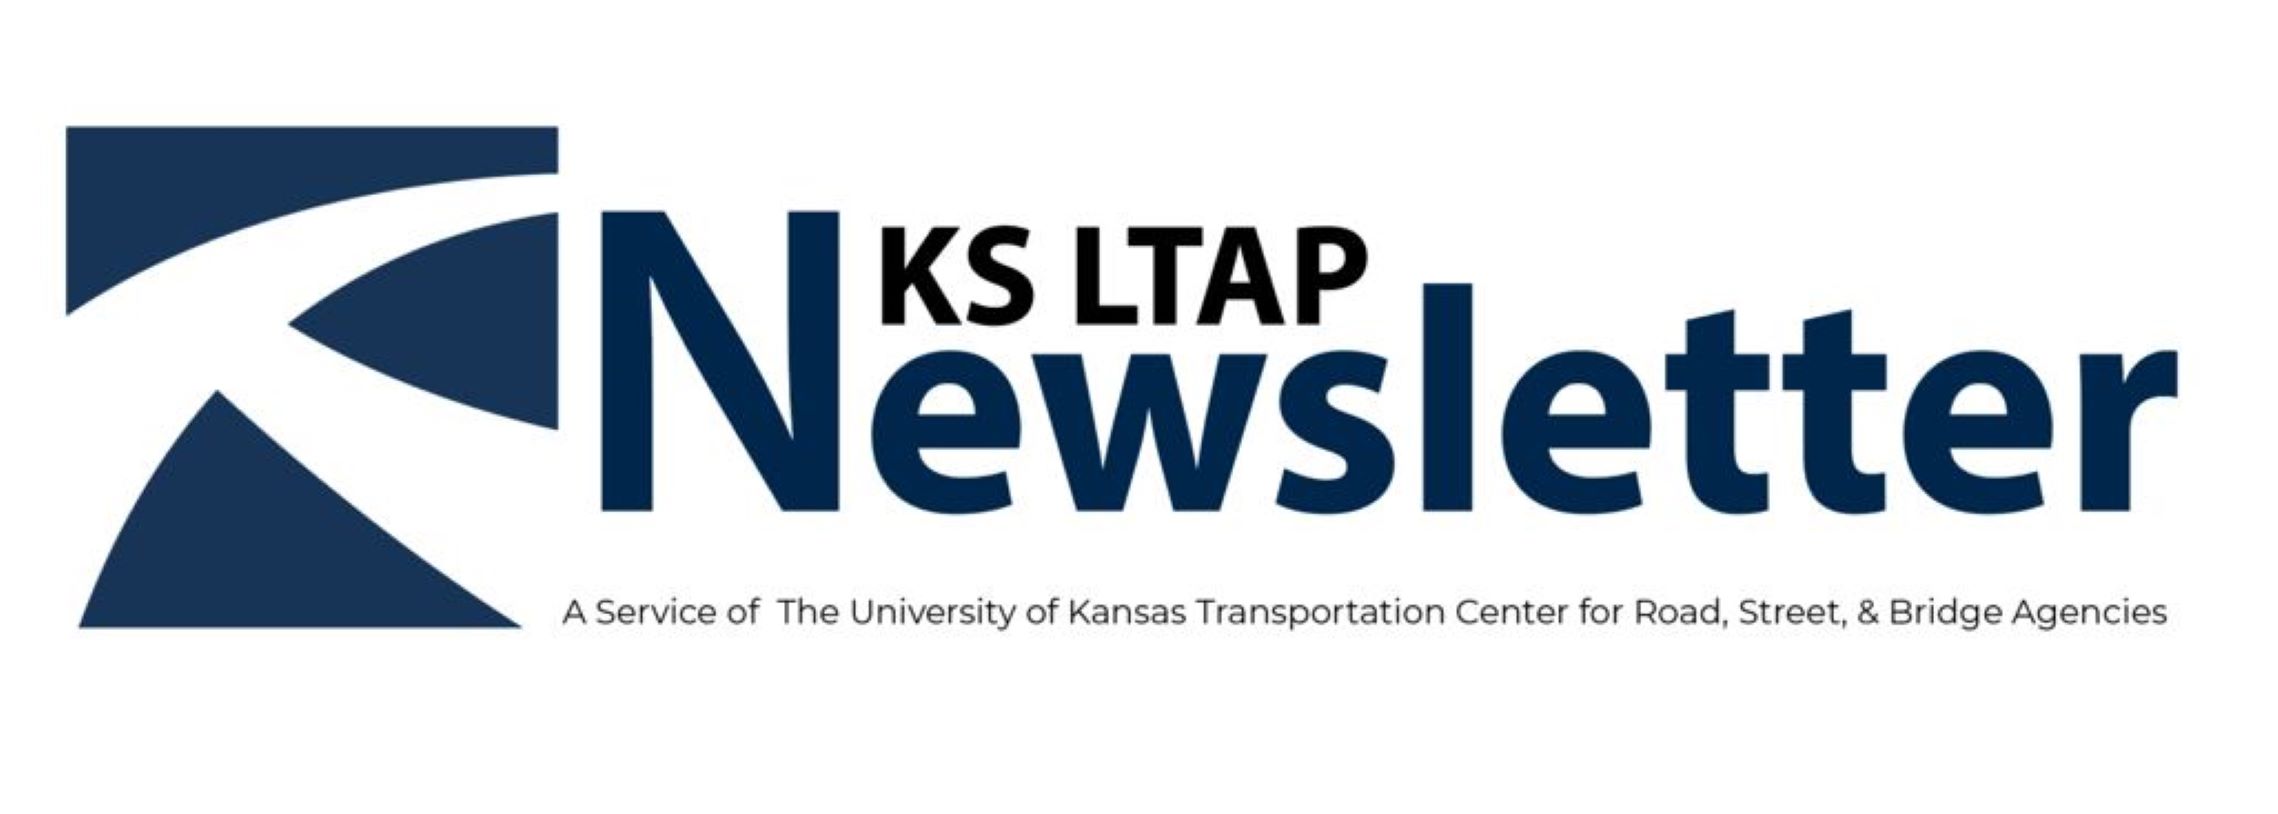 LTAP Newsletter logo